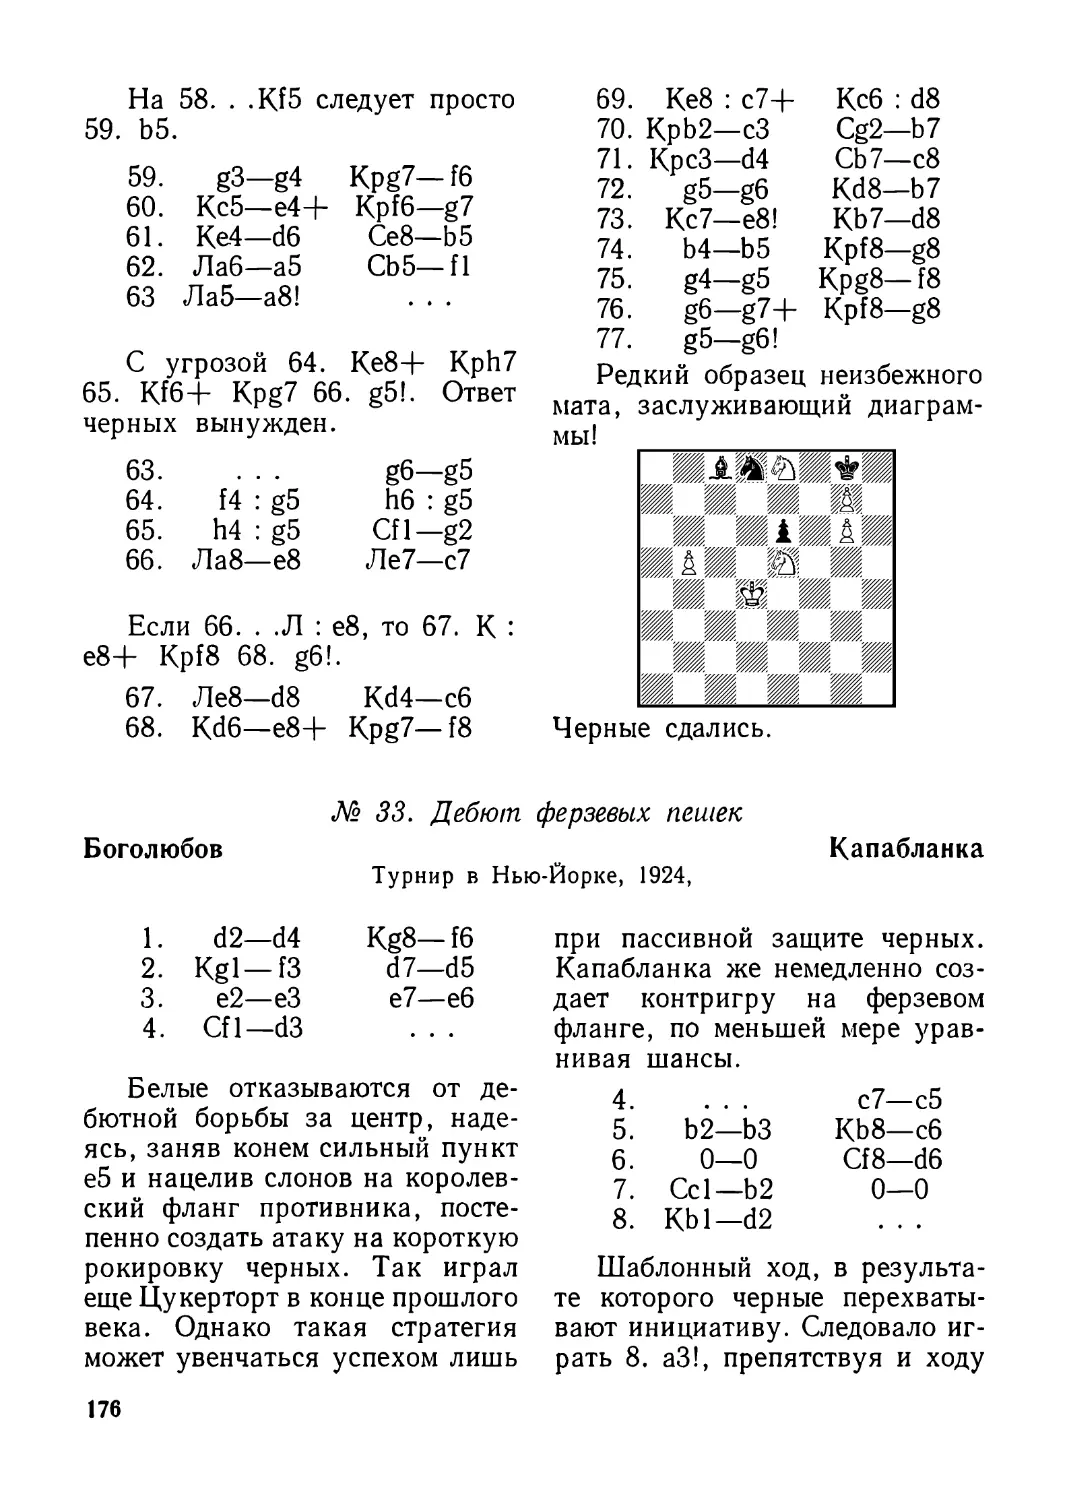 33.Боголюбов — Капабланка, турнир в Нью-Йорке 1924 г.